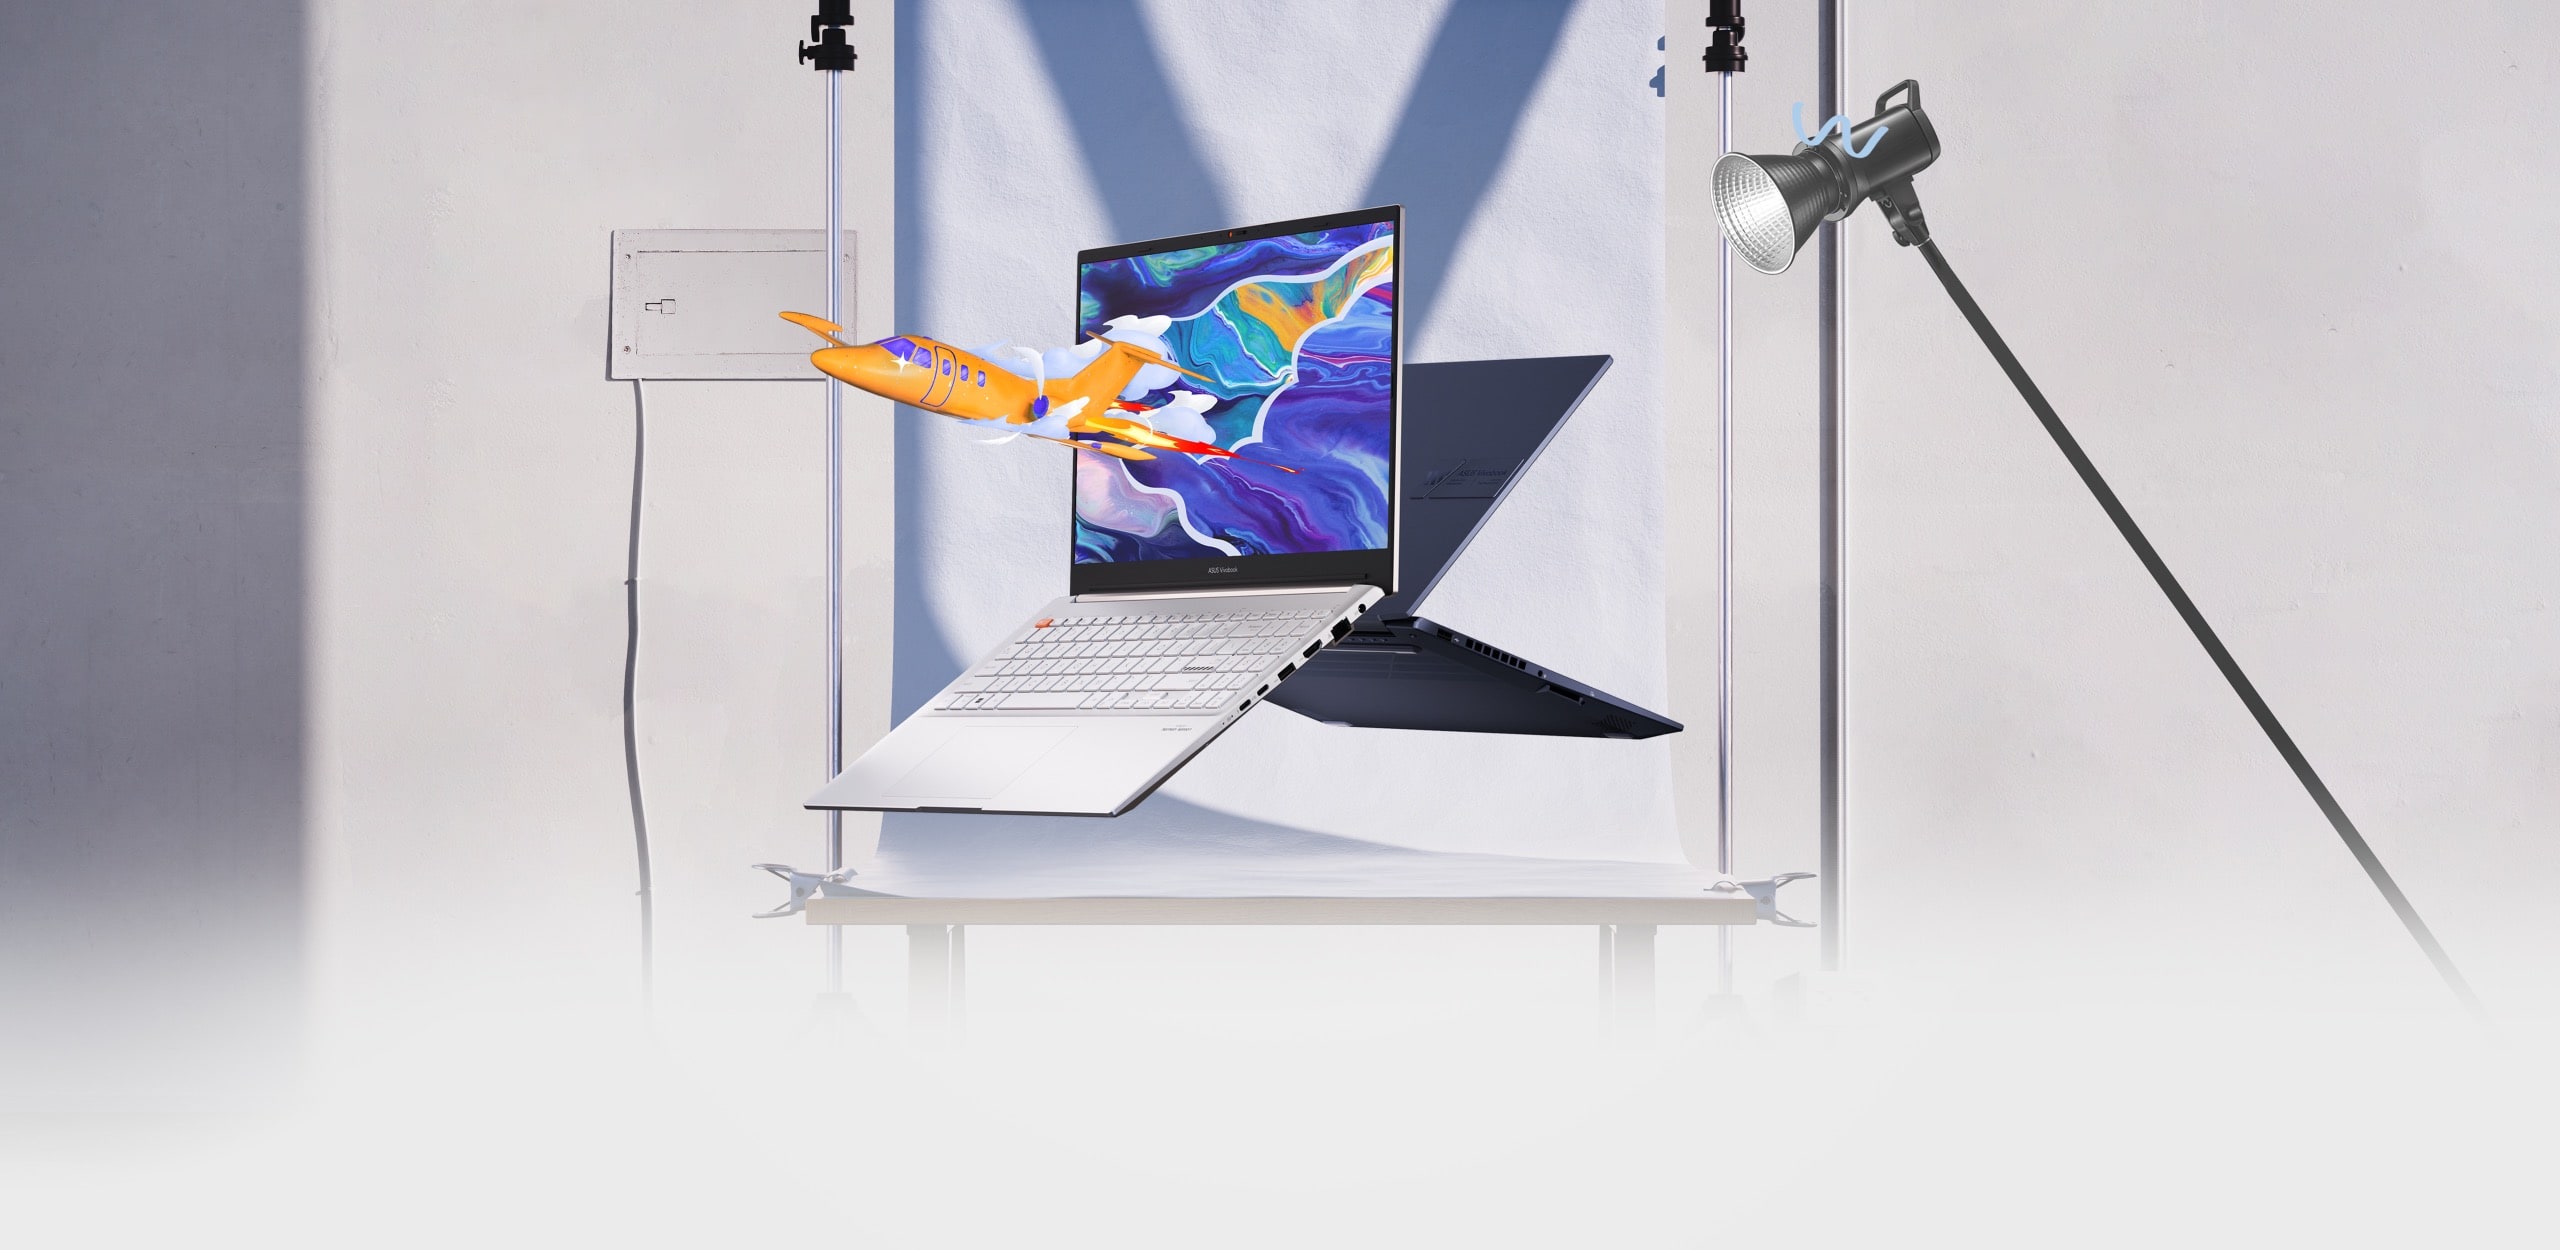 兩台 Vivobook Pro 15 OLED 筆電的前、後視圖，其中一台顯示飛機從螢幕上的彩色圖形中躍出